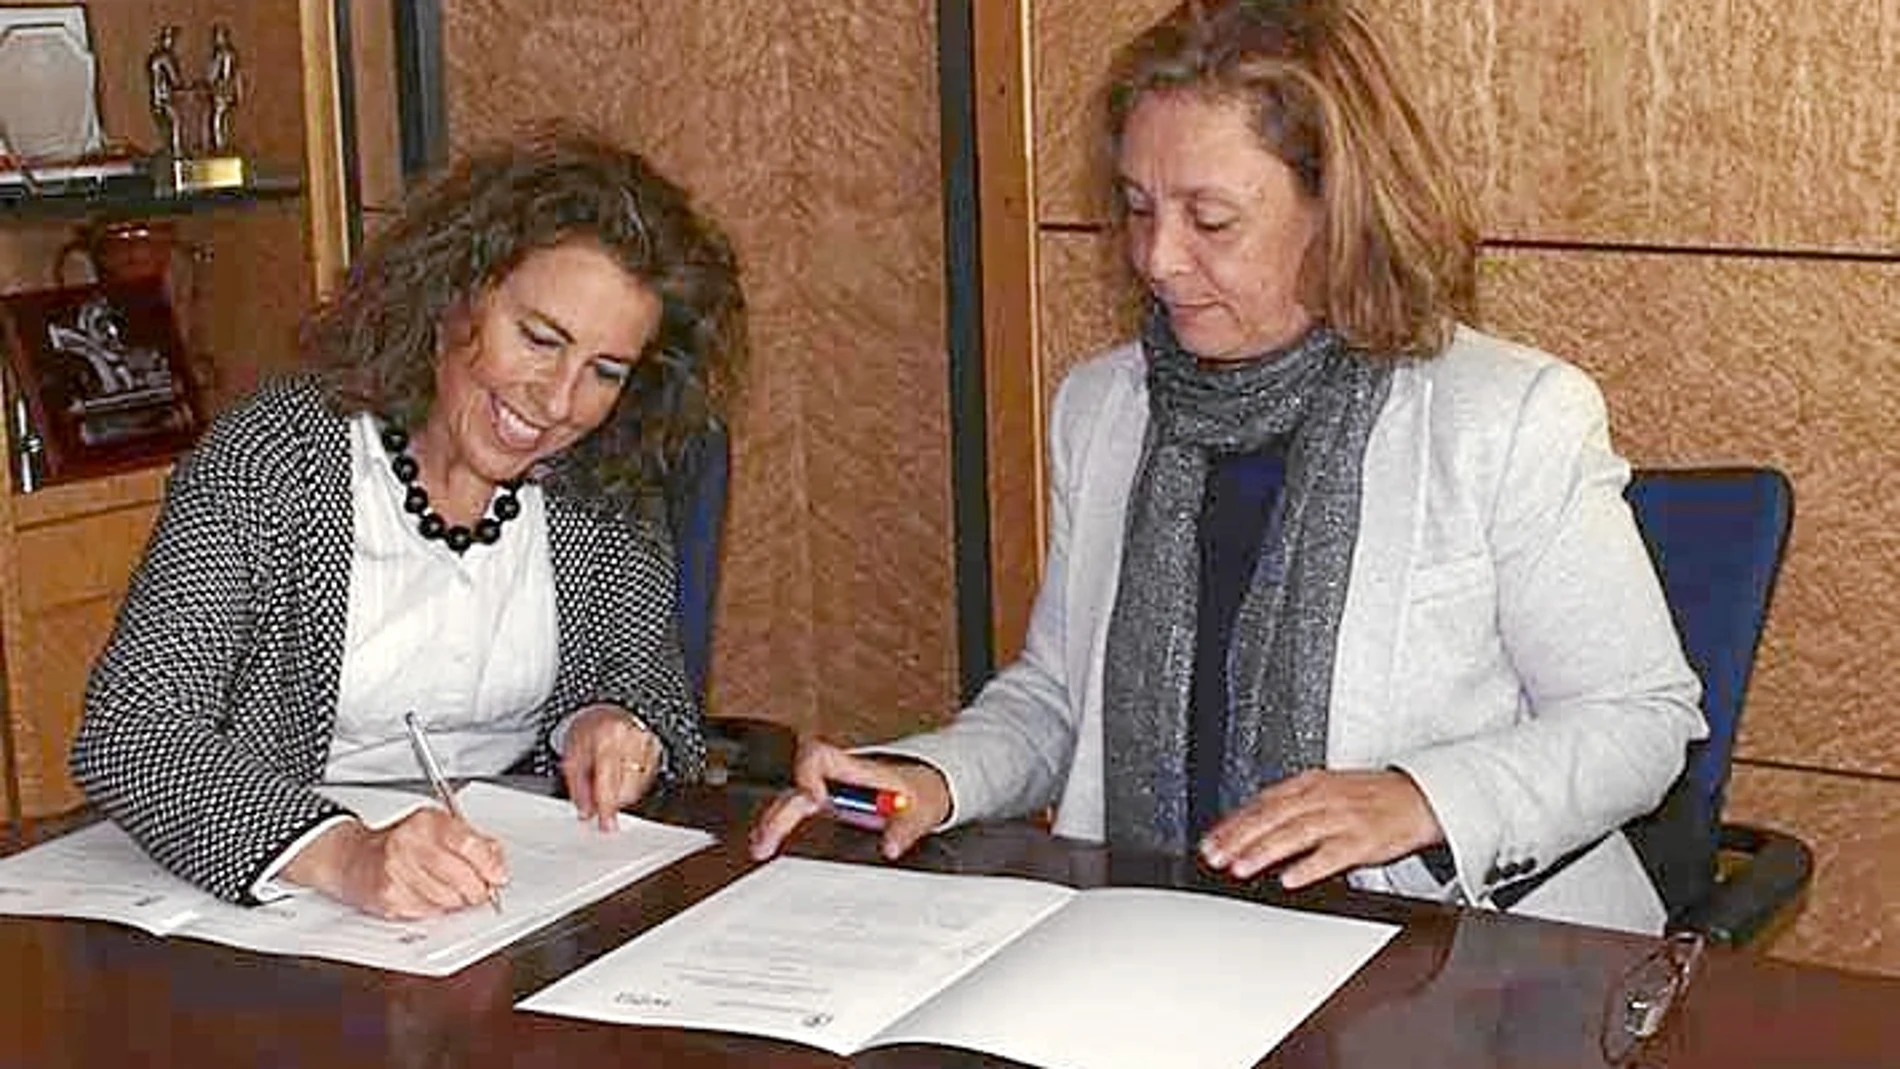 Pilar Díaz, directora de la Fundación Cauce, y Aurora Baza, concejal de Bienestar Social del Ayuntamiento de León, firman el acuerdo para poner en marcha el servicio de respiro famiiliar